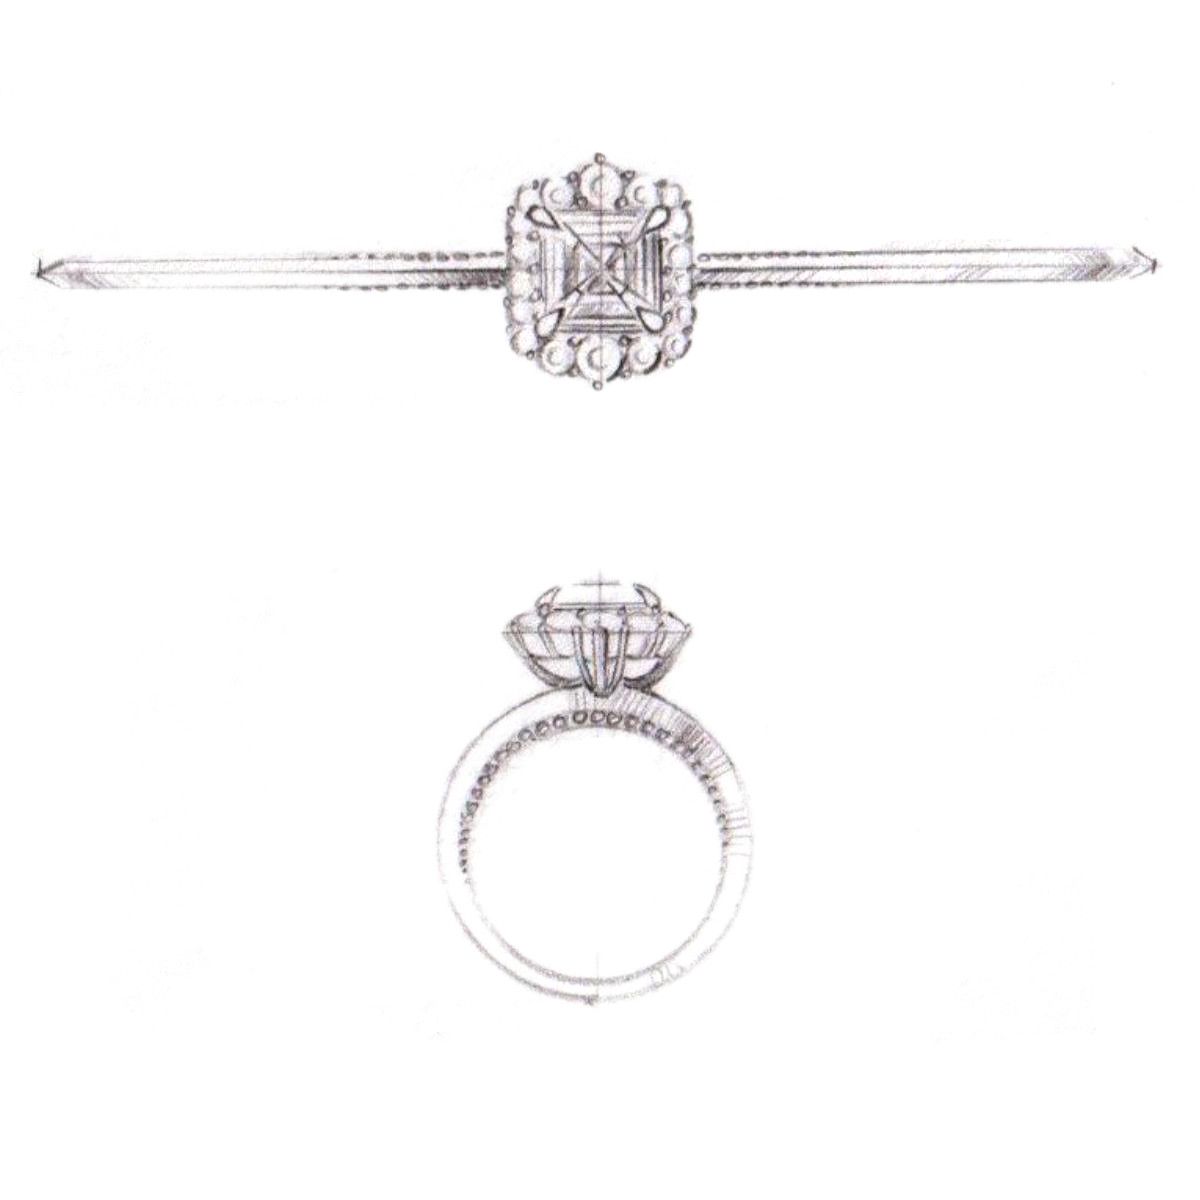 Asscher cut center stone engagement ring designs | CustomMade.com